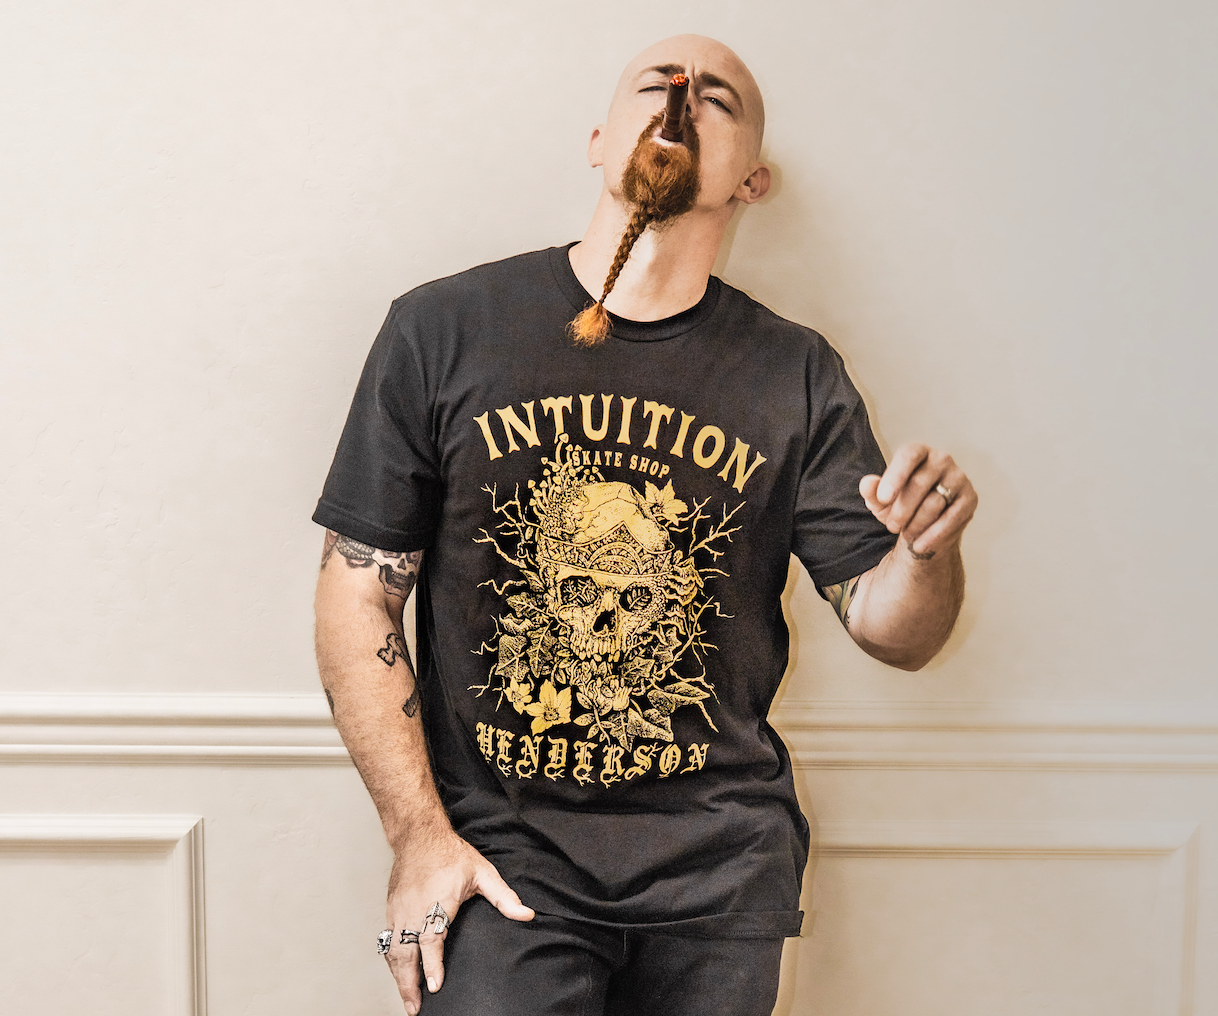 Intuition Derek Henderson 2 shirt